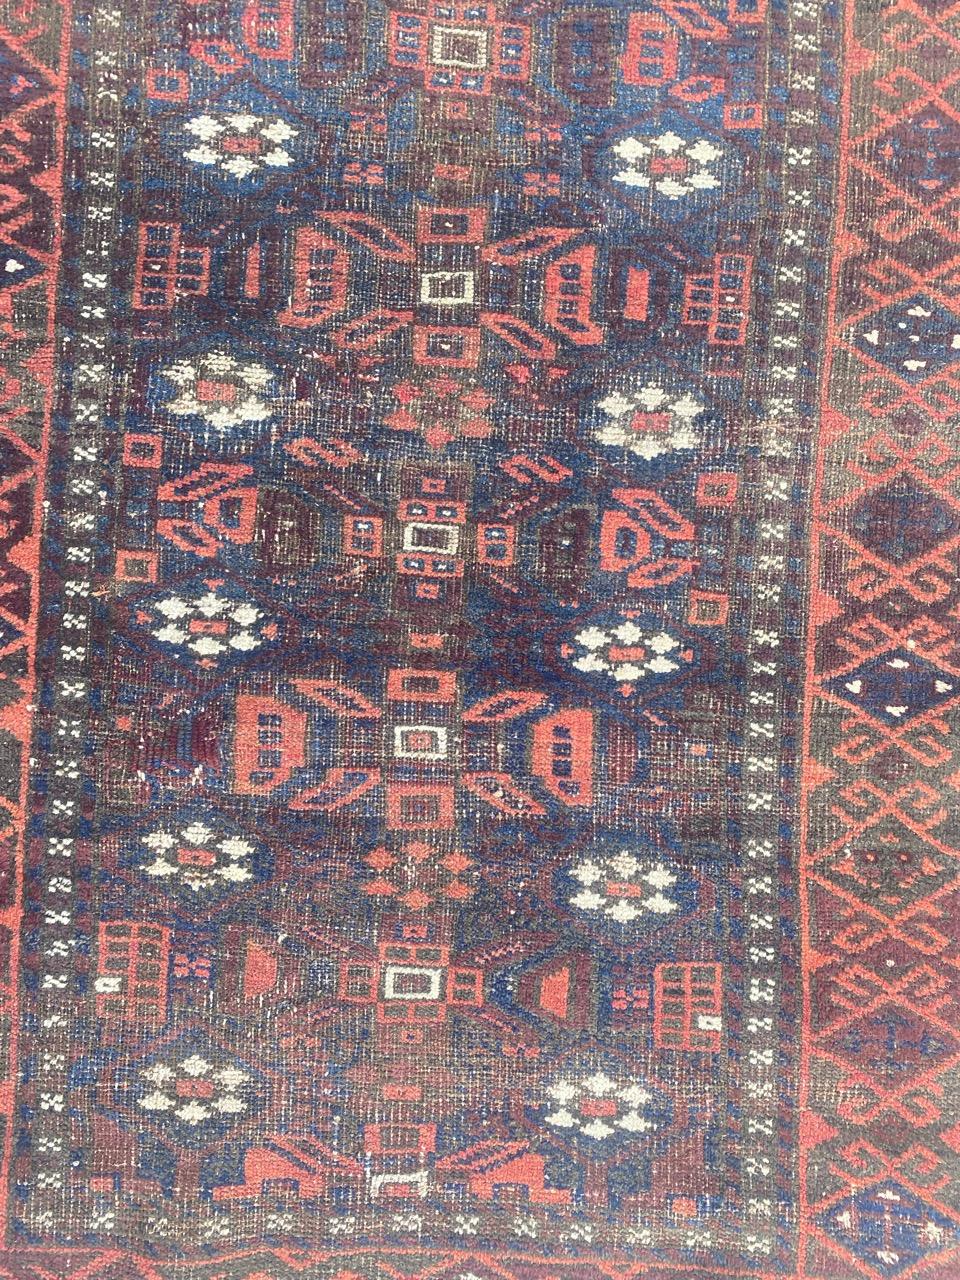 Joli tapis turkmène baloutche afghan de la fin du 19e siècle, avec de beaux motifs tribaux et de belles couleurs naturelles, entièrement noué à la main avec du velours de laine sur une base de laine.

✨✨✨
